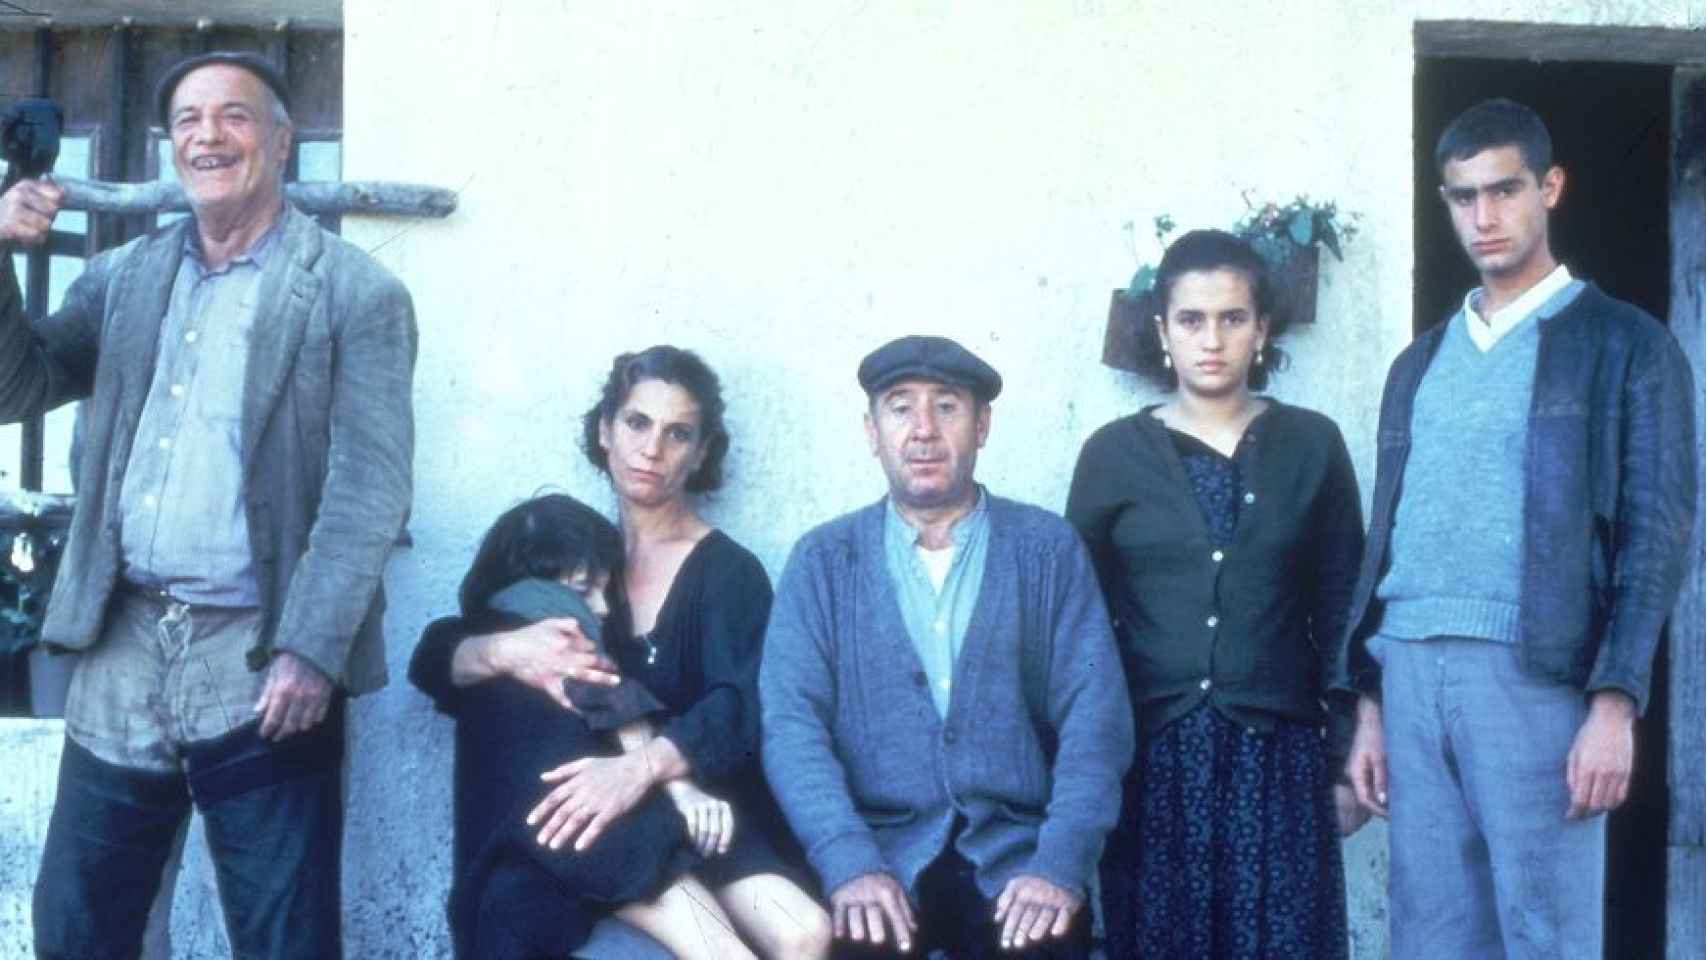 Fotograma de 'Los santos inocentes': Paco Rabal, Susana Sánchez, Terele Pávez, Alfredo Landa, Belén Ballesteros y Juan Sánchez.